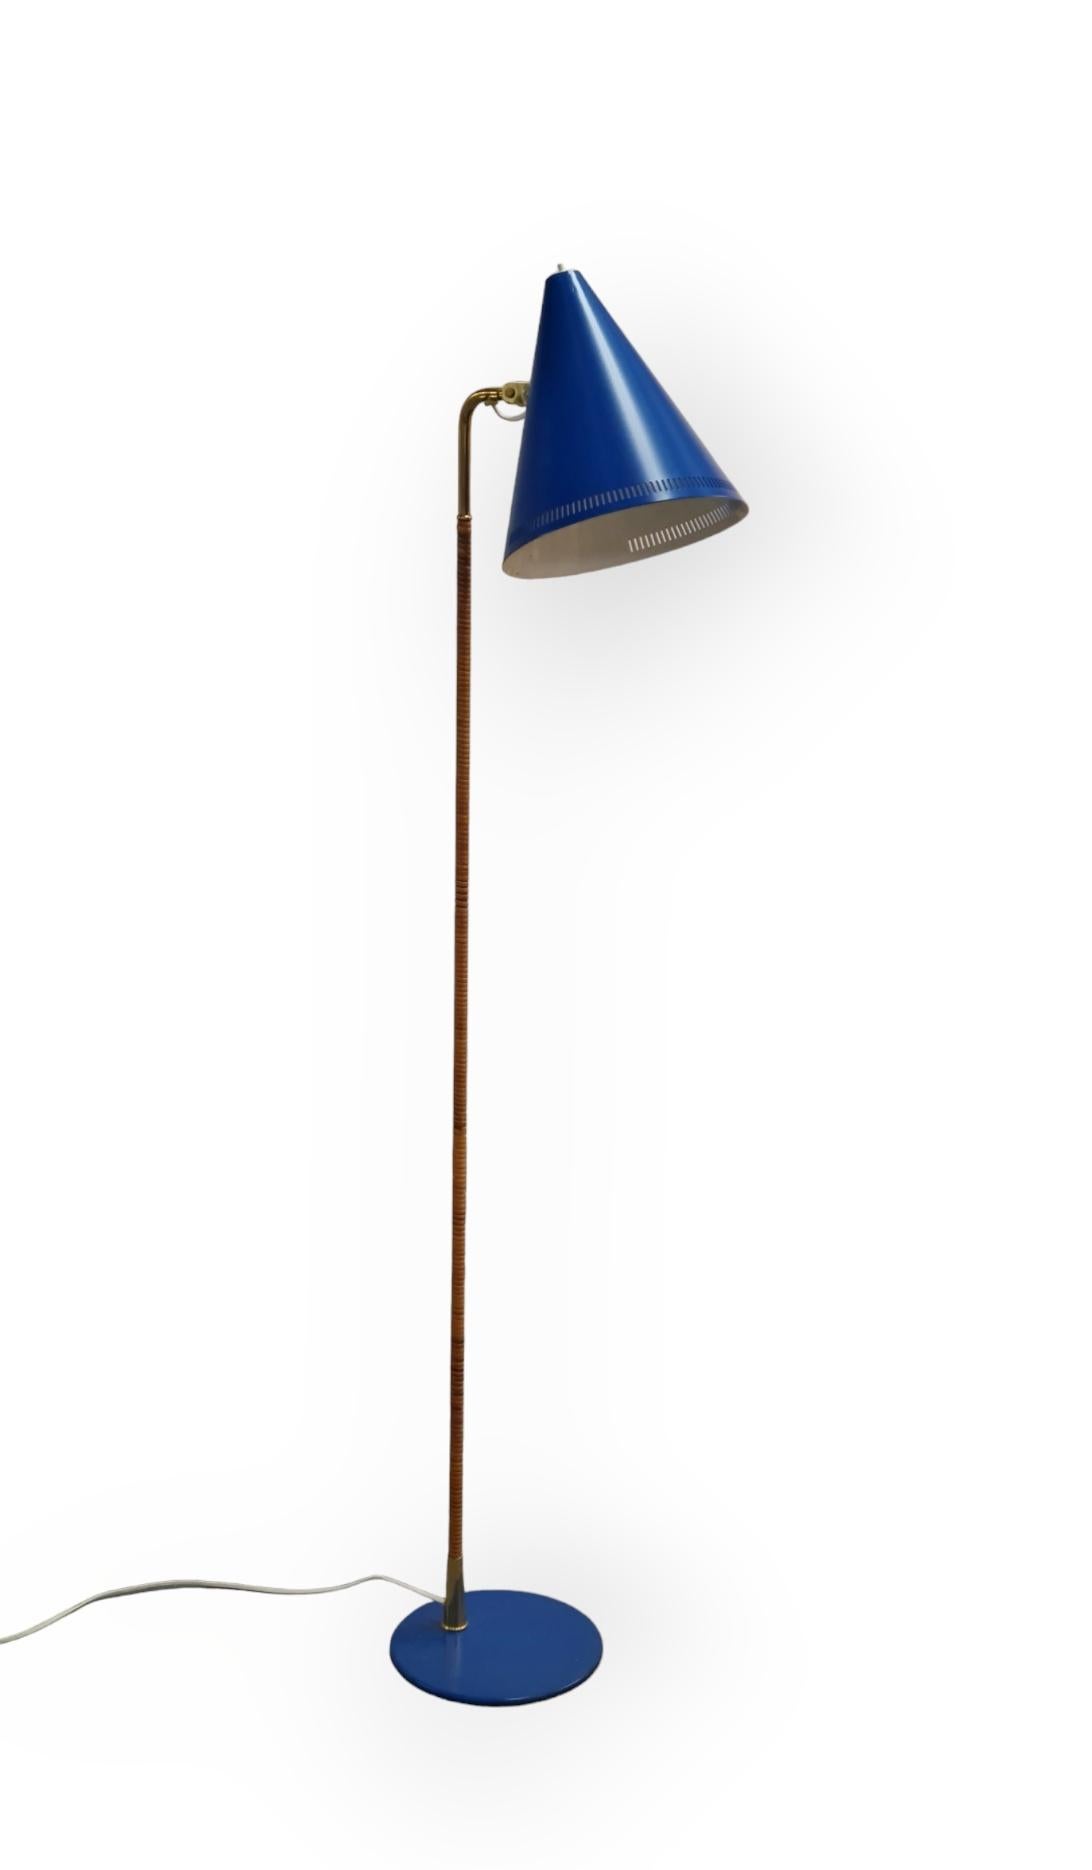 Un modèle de lampadaire emblématique conçu par Paavo Tynell pour Idman dans les années 1950. 

La lampe a été repeinte en bleu, en remplacement des versions noires et blanches qui sont les couleurs les plus fréquentes.

La lampe est par ailleurs en